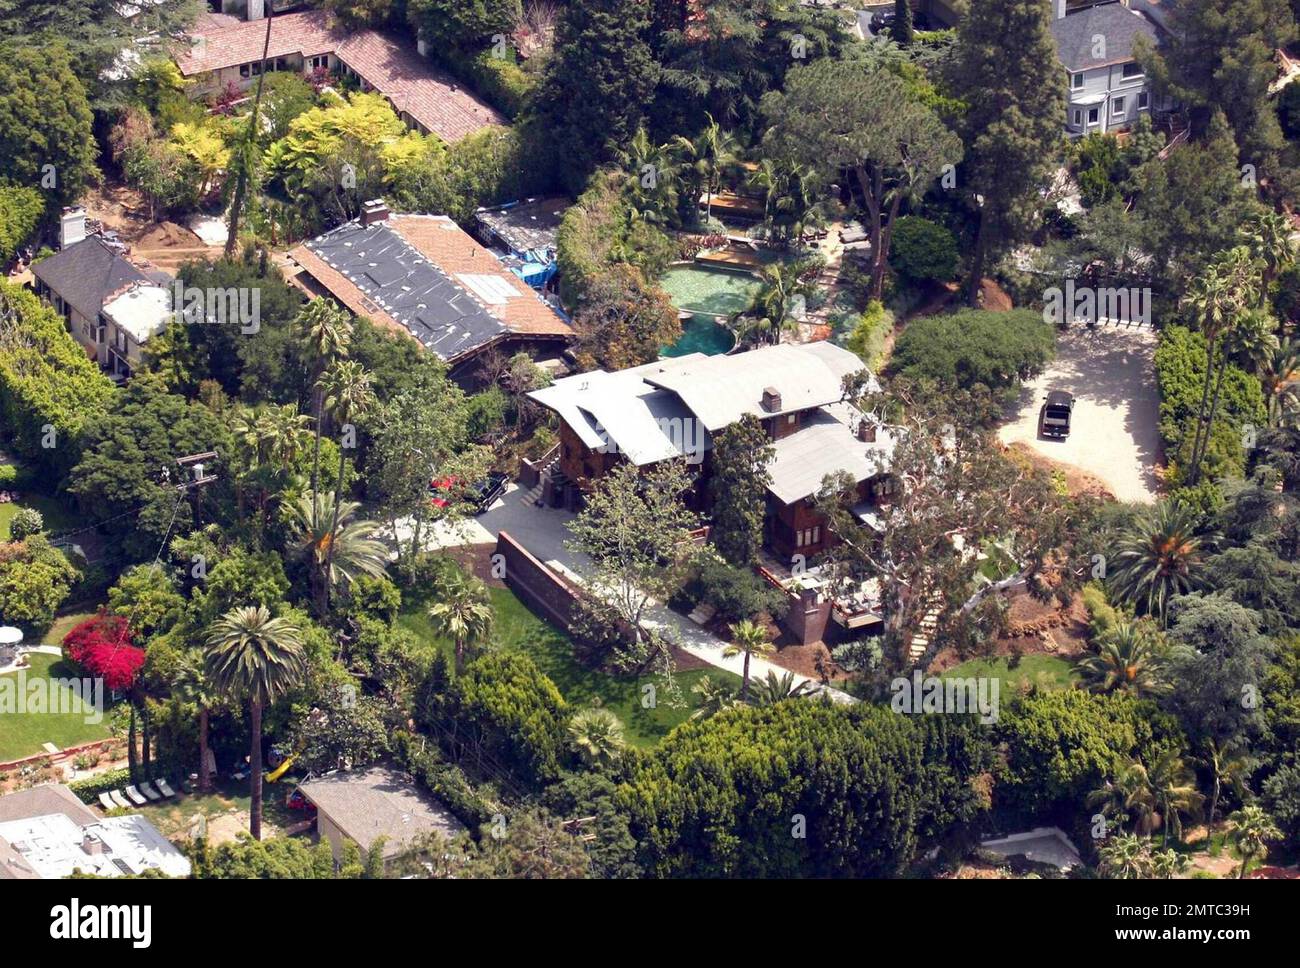 Exklusiv!! Das ist Brad Pitt und Angelina Jolies weitläufige Hollywood-Anlage, die vier Grundstücke in Los Feliz belegt. Jüngsten Berichten zufolge hat Brad Pitt das gemietete Haus des Paares in Long Island über Ostern verlassen und soll seine Sachen aus ihrem Haus, Chateau Miraval, in Frankreich entfernt haben, wegen Beziehungsproblemen. Los Angeles, Ca. 4/29/09 Stockfoto